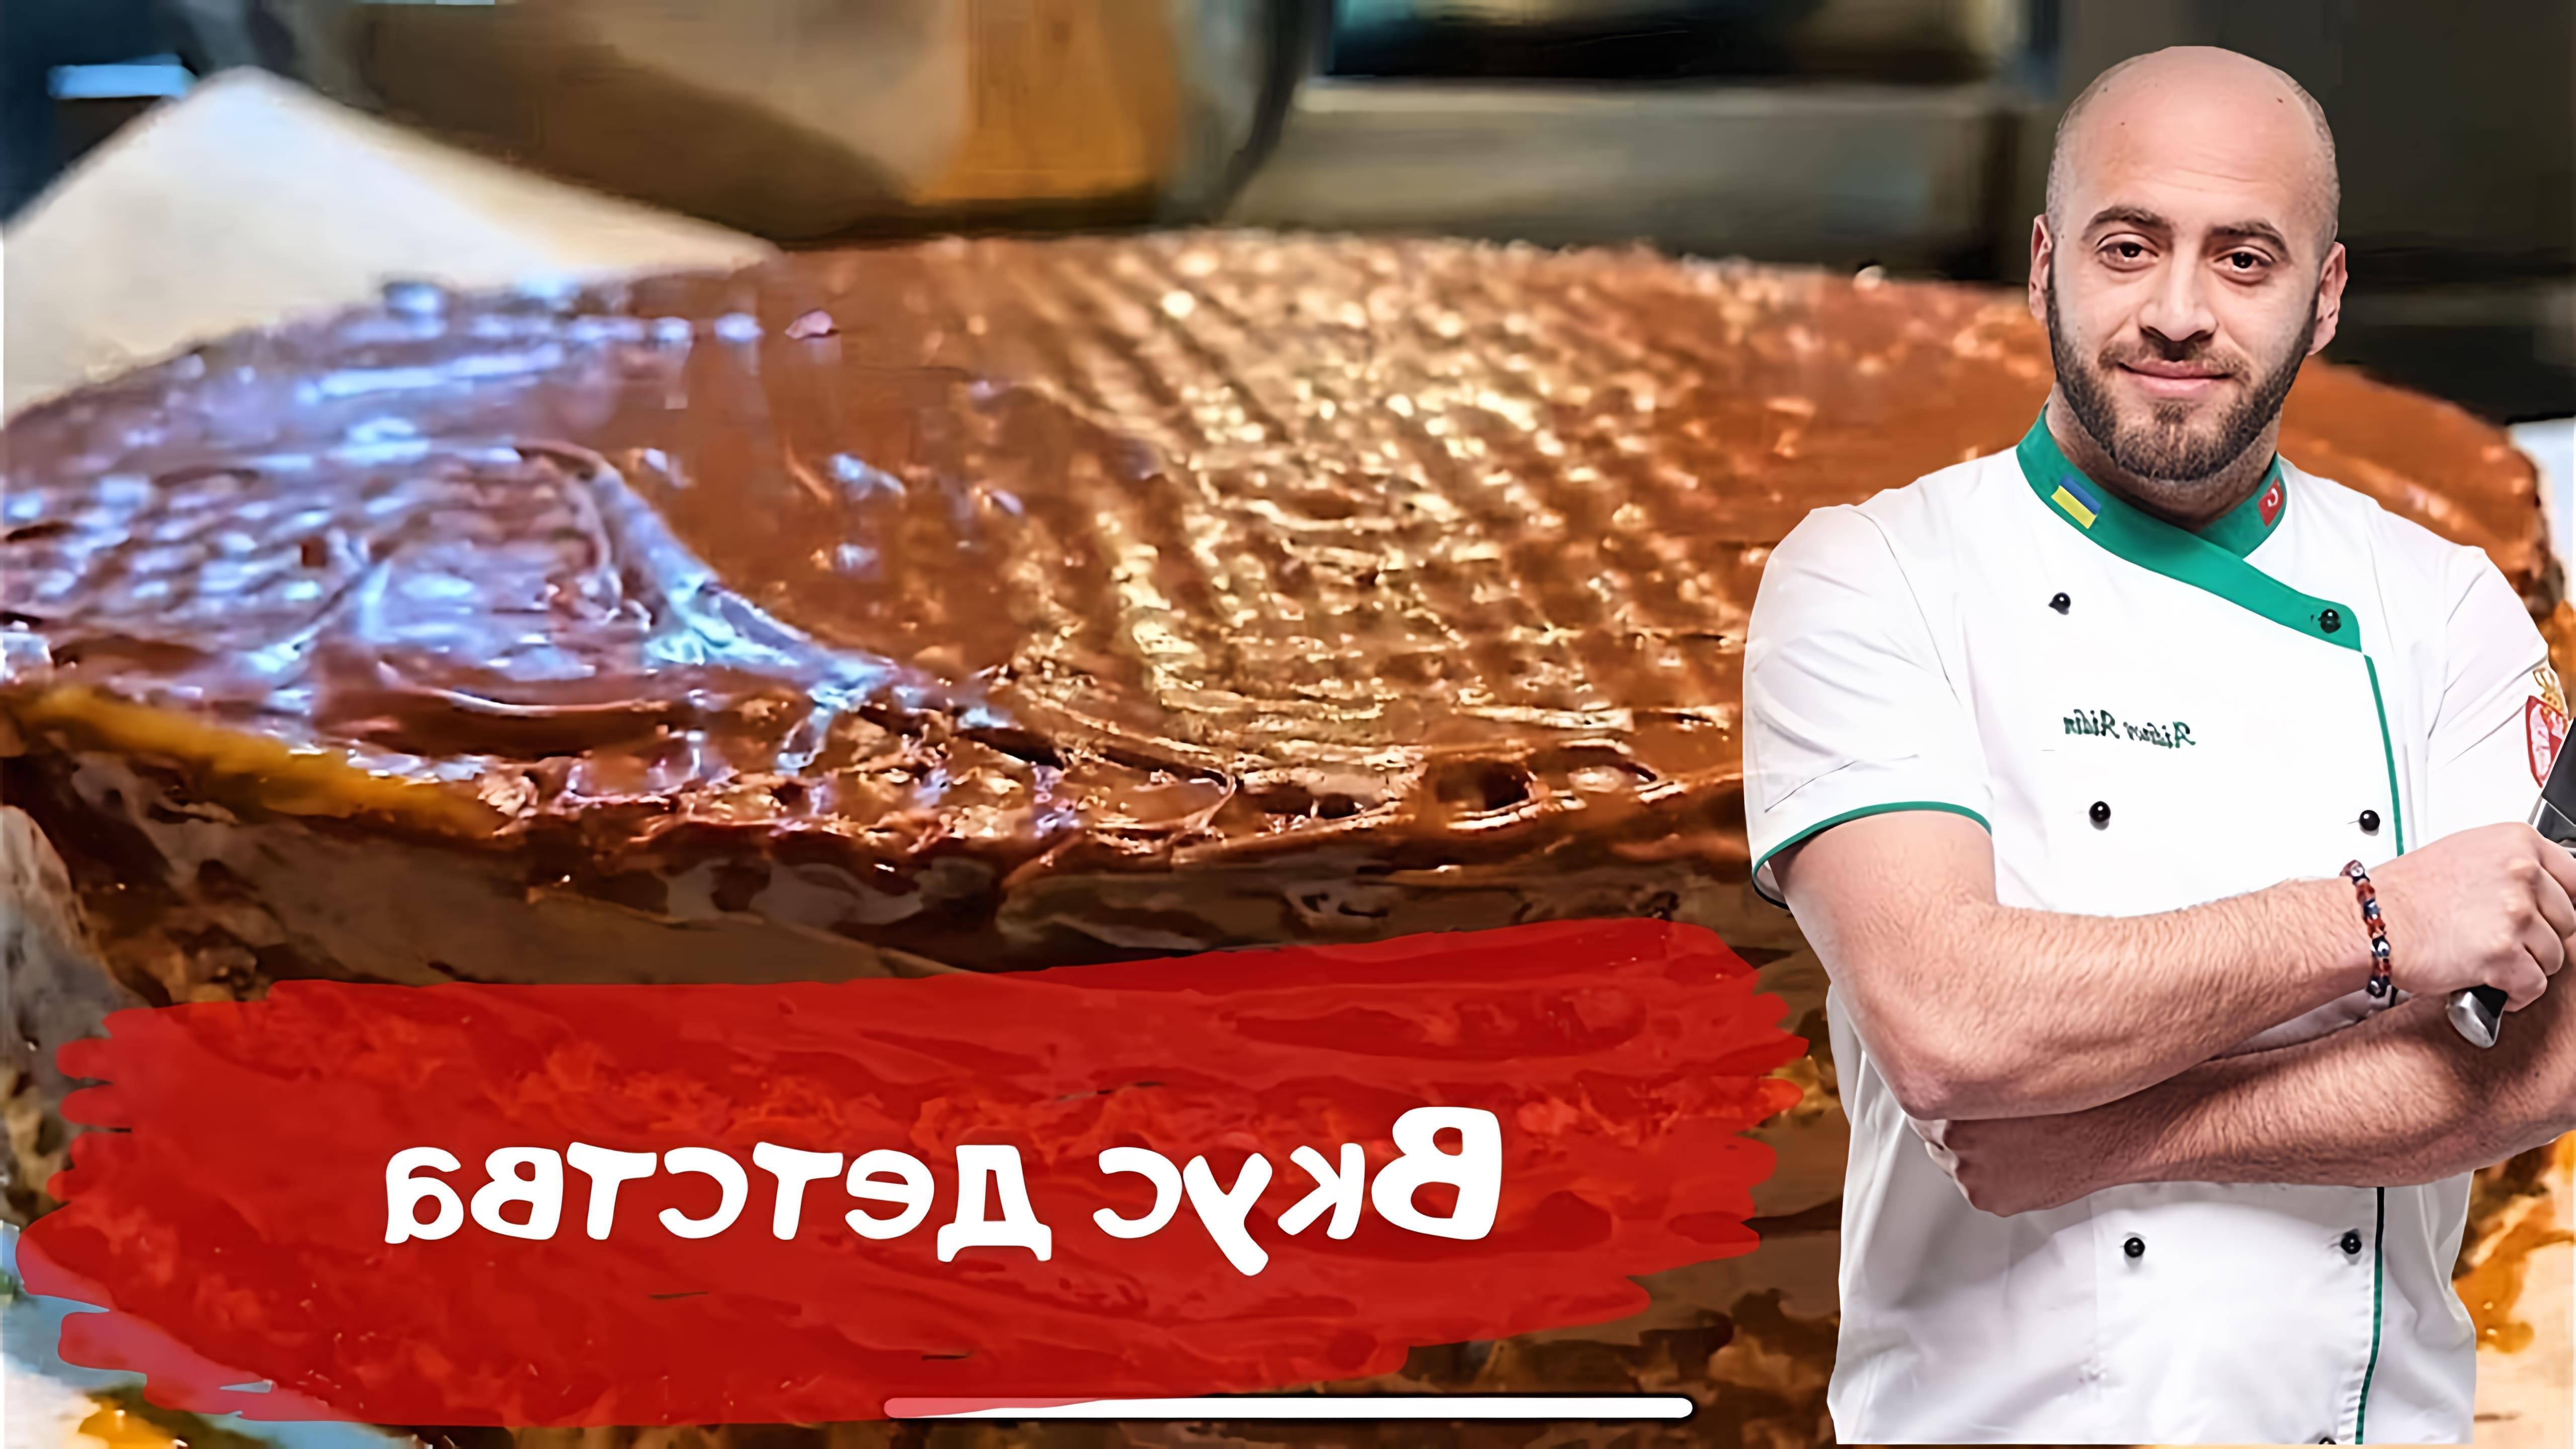 В этом видео Шеф-повар демонстрирует приготовление уникального вафельного торта по своему рецепту